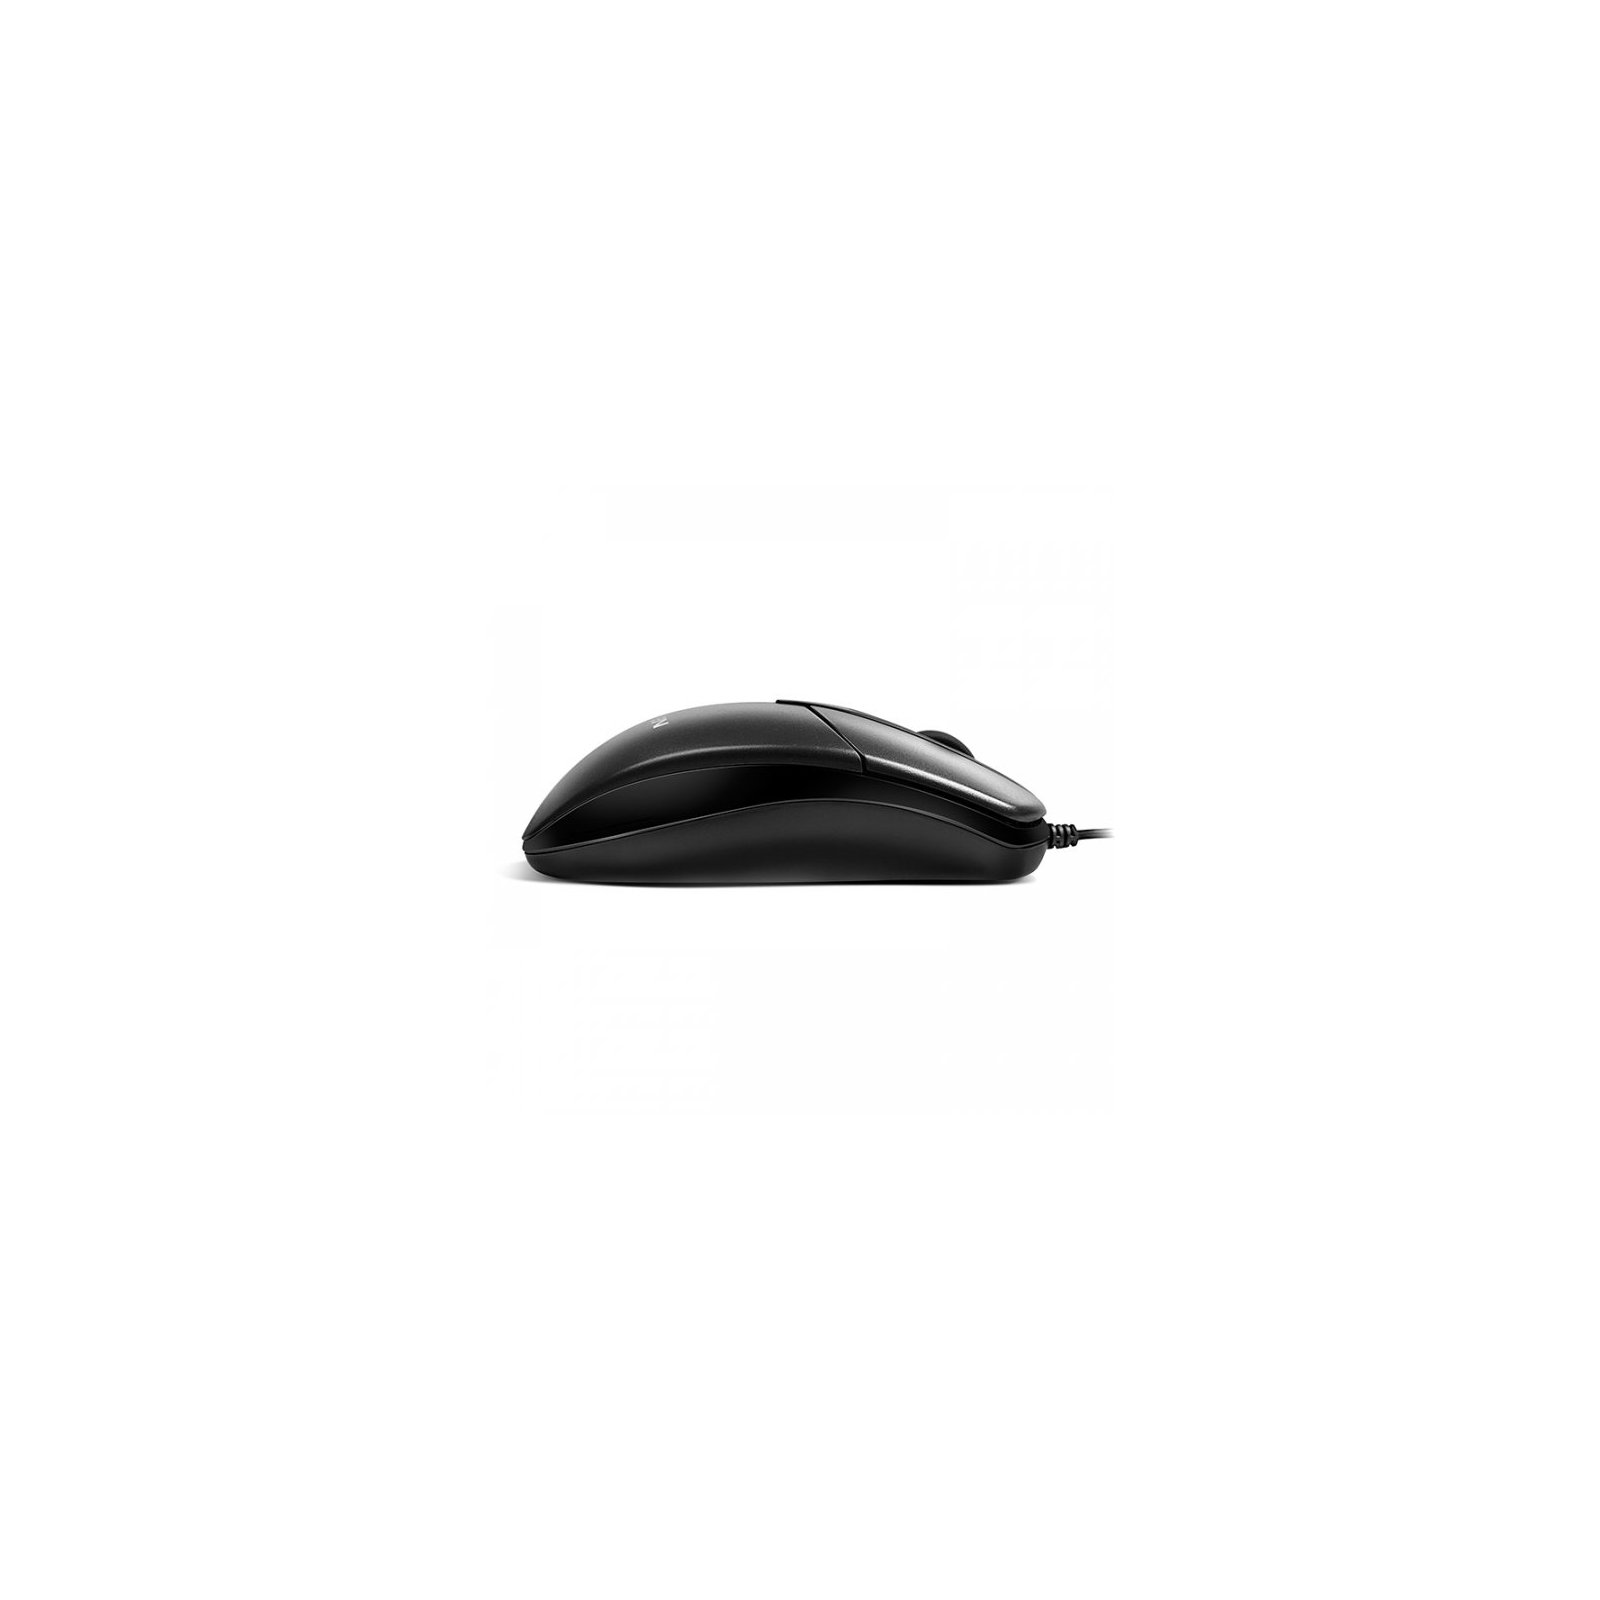 Мышка Sven RX-112 USB black изображение 2